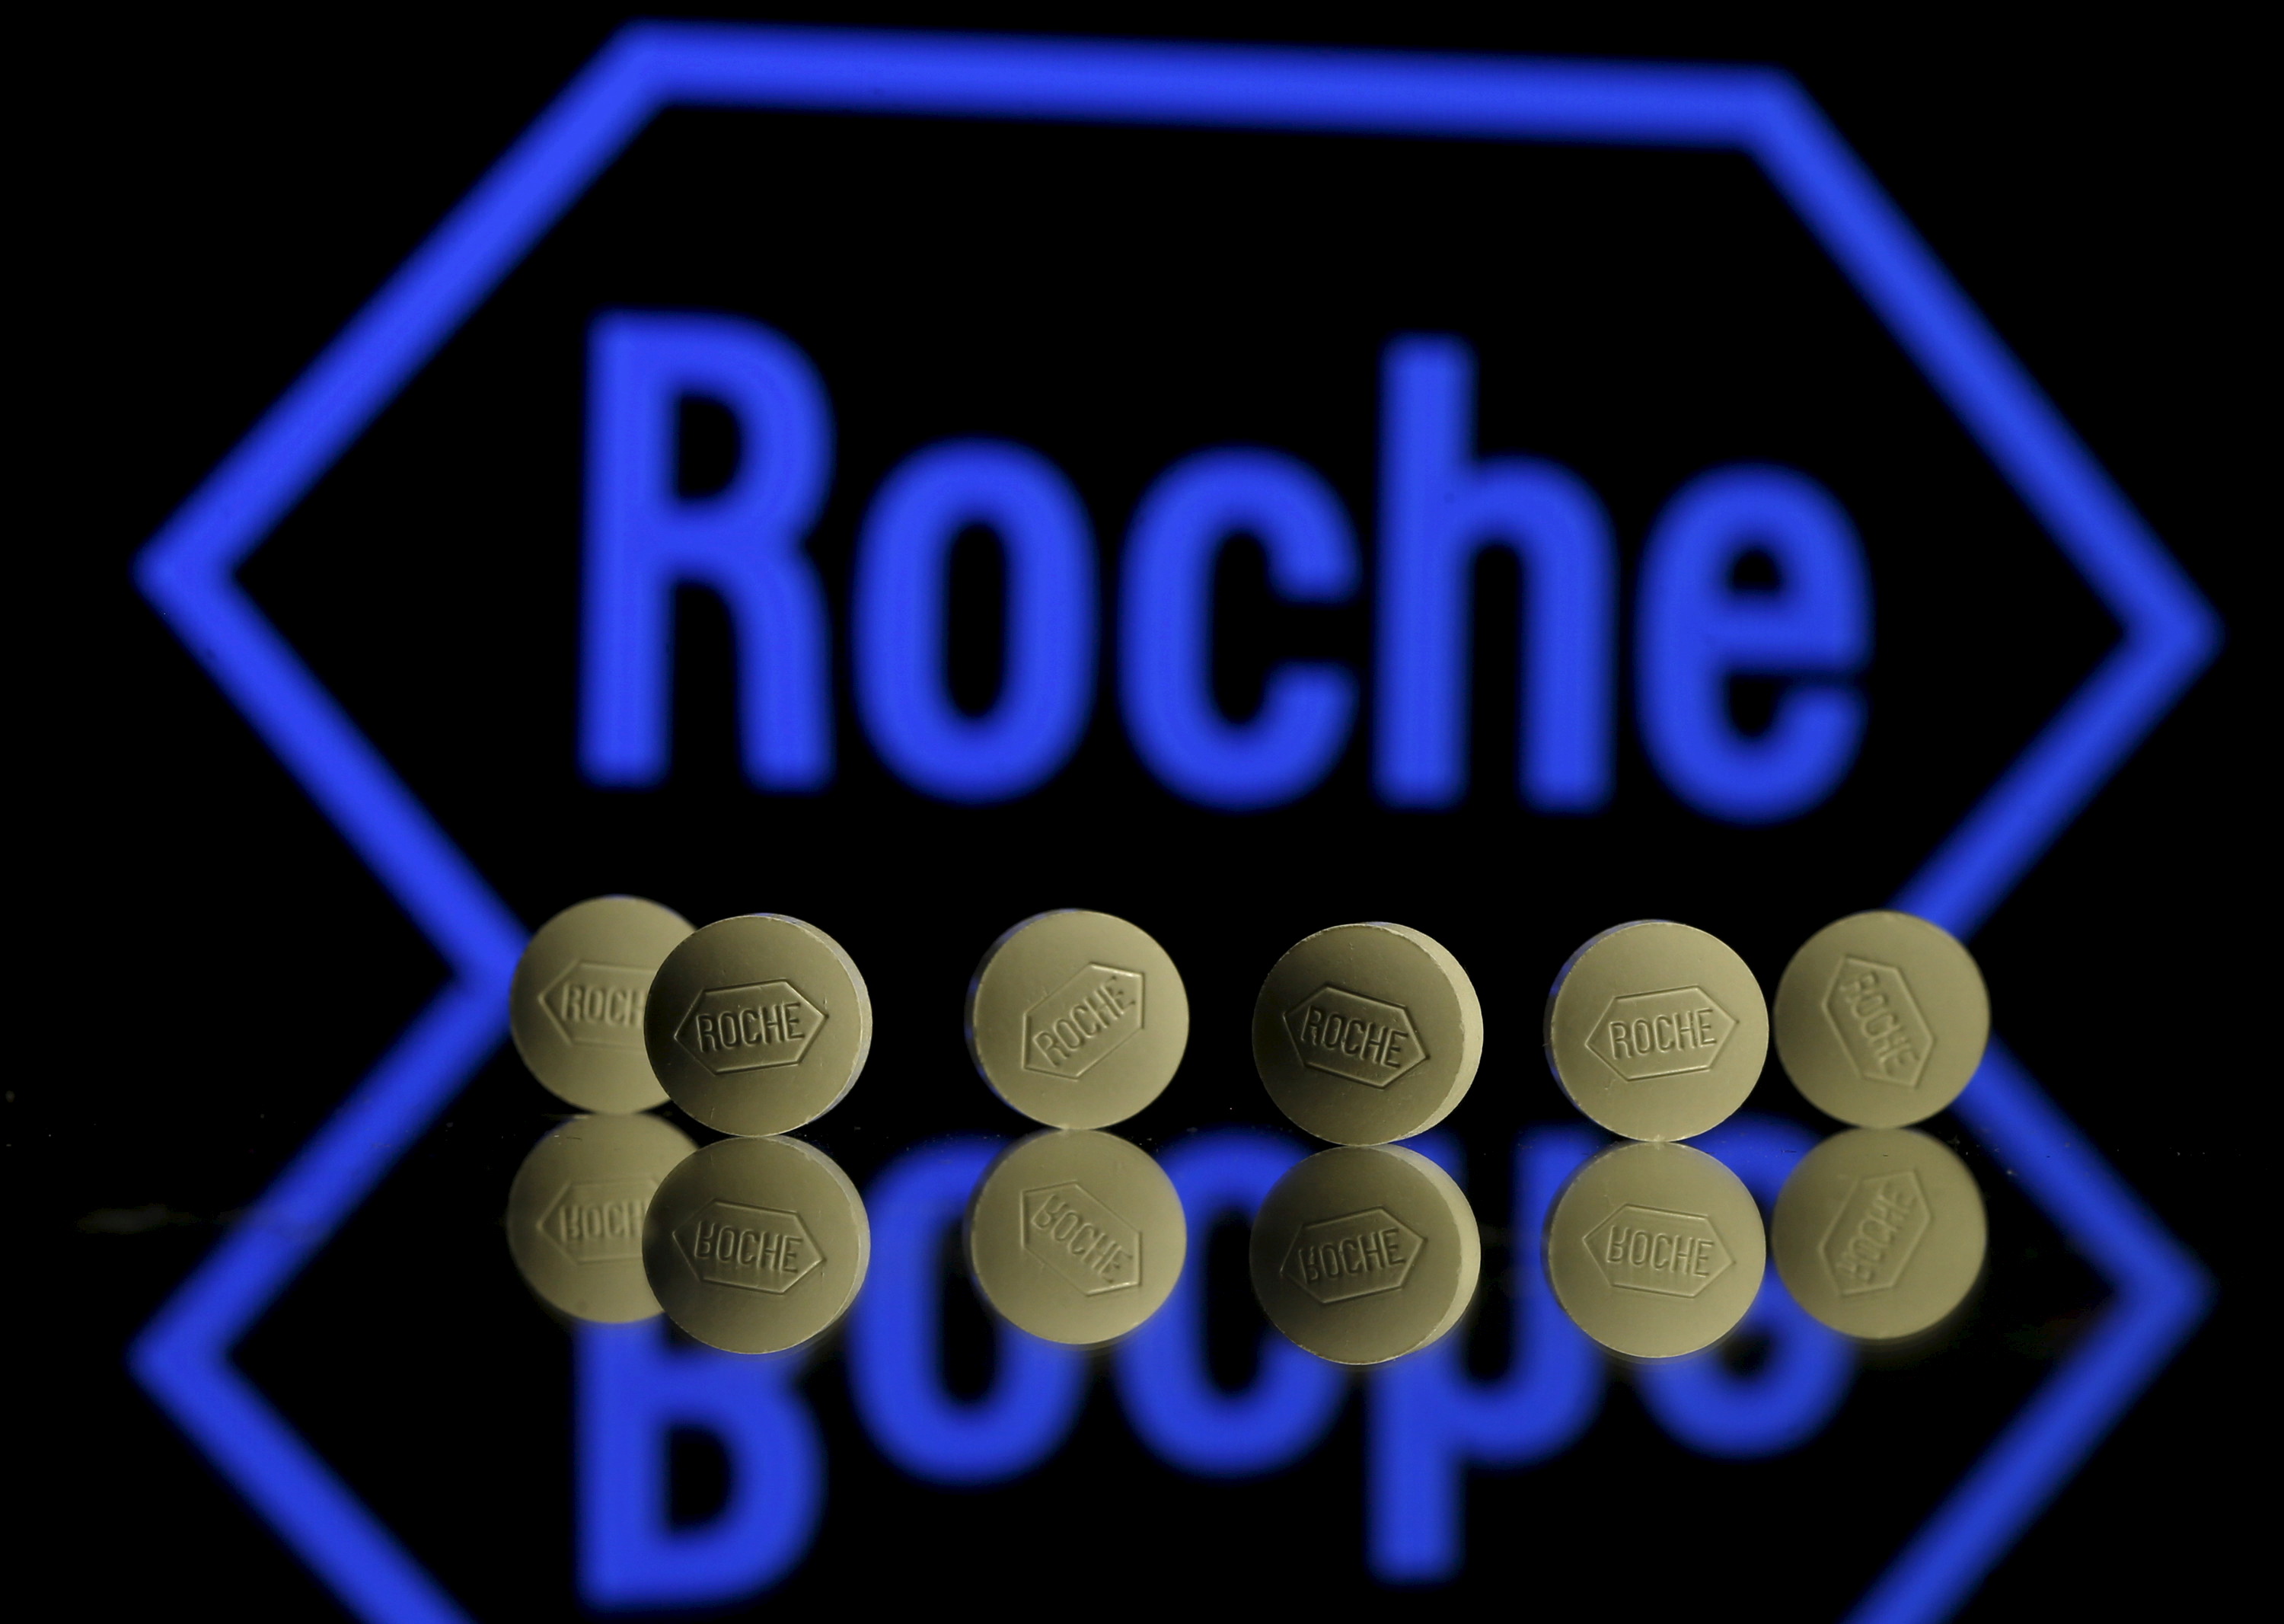 En esta ilustración fotográfica se ven comprimidos de Roche colocados delante del logotipo de Roche.